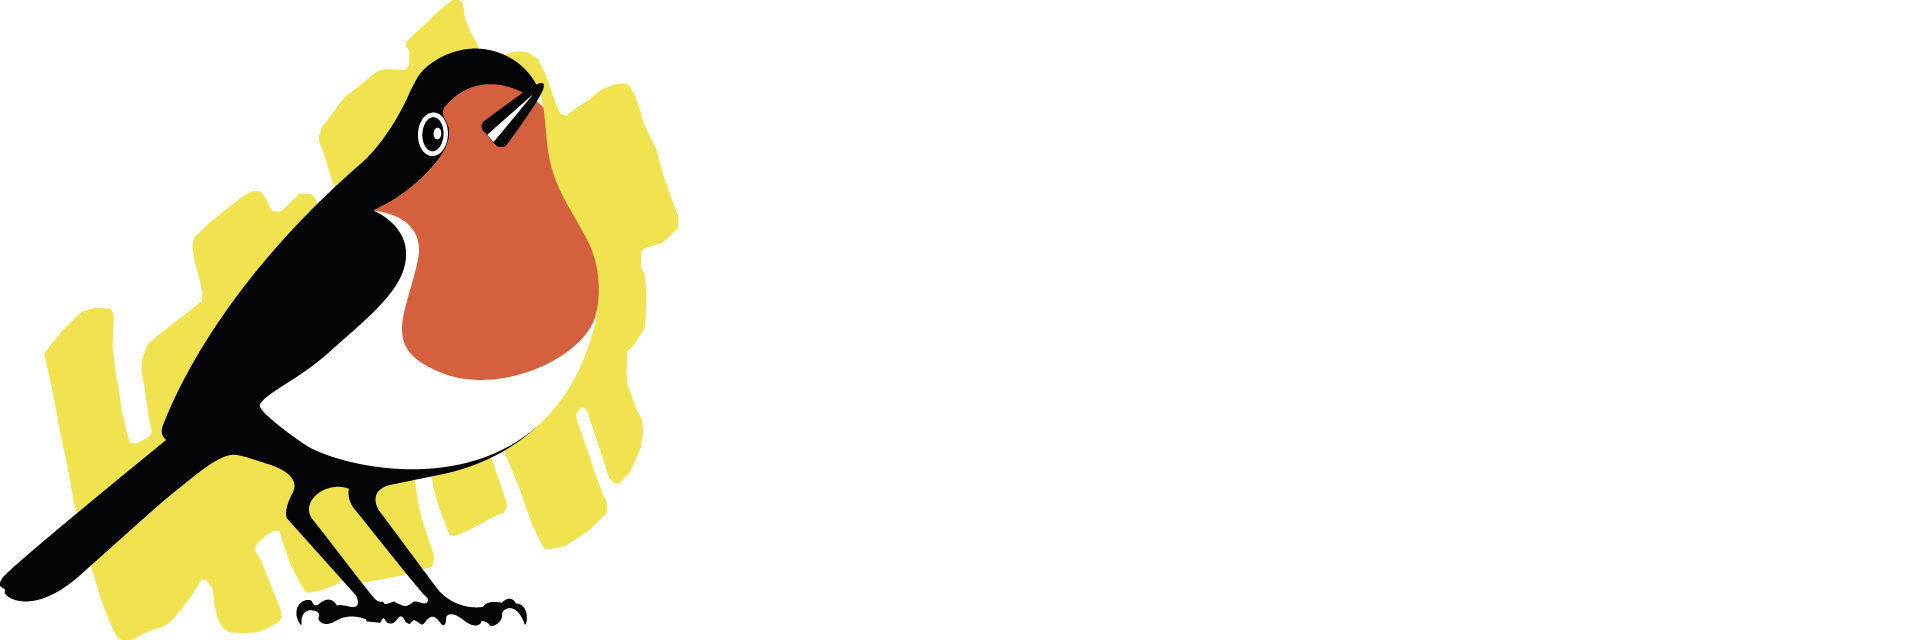 Ligue Royale Belge pour la Protection des Oiseaux